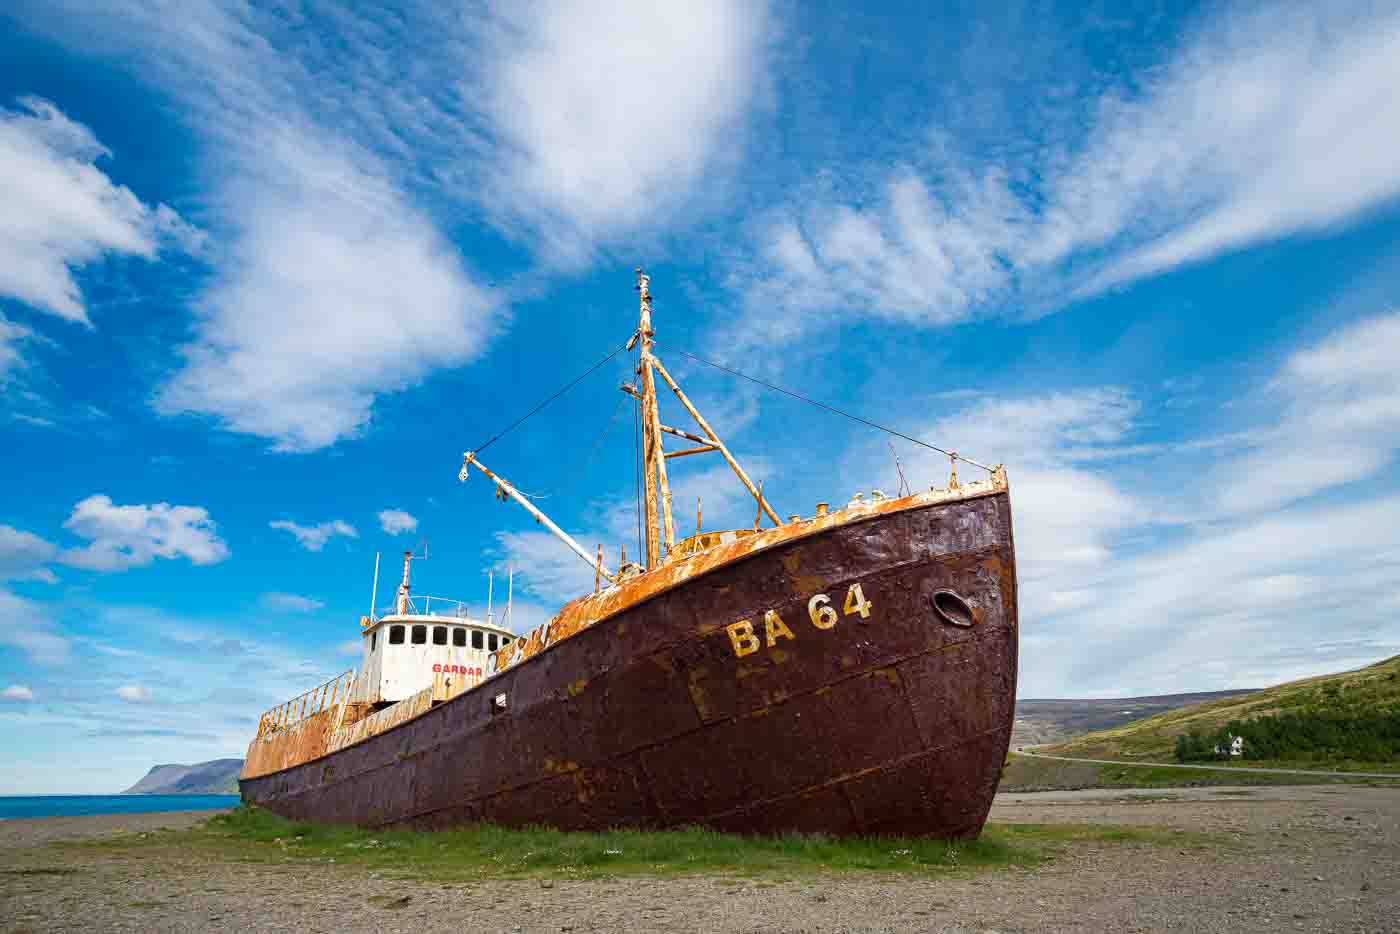 epave-du-bateau-gardar-ba-dans-les-fjords-du-nord-ouest-en-islande